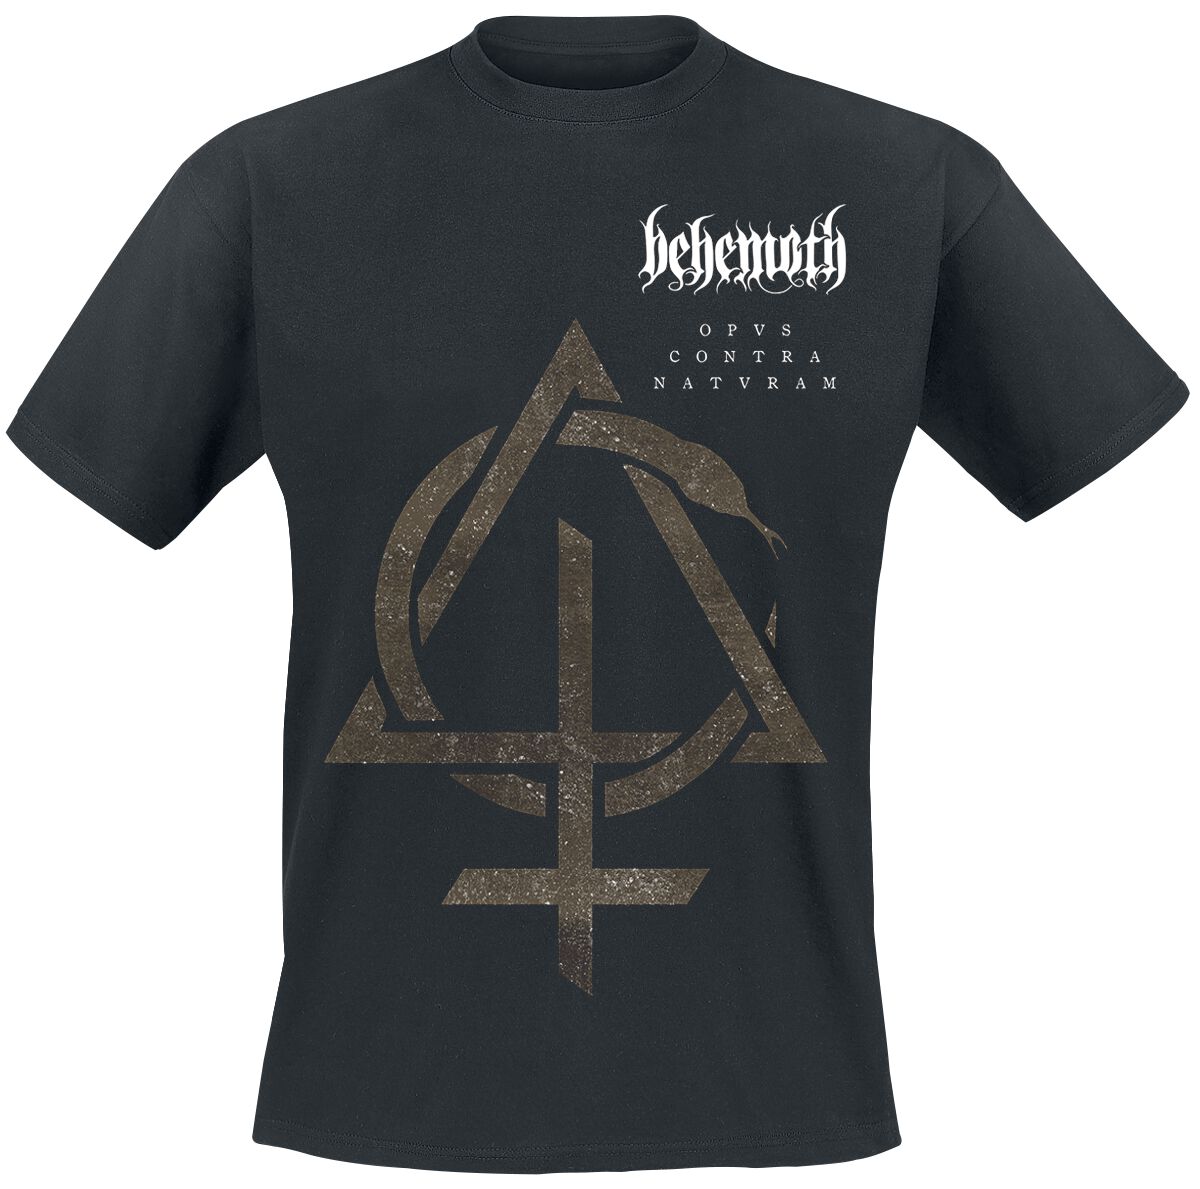 Behemoth T-Shirt - Contra Natvram - S bis 3XL - für Männer - Größe 3XL - schwarz  - Lizenziertes Merchandise!